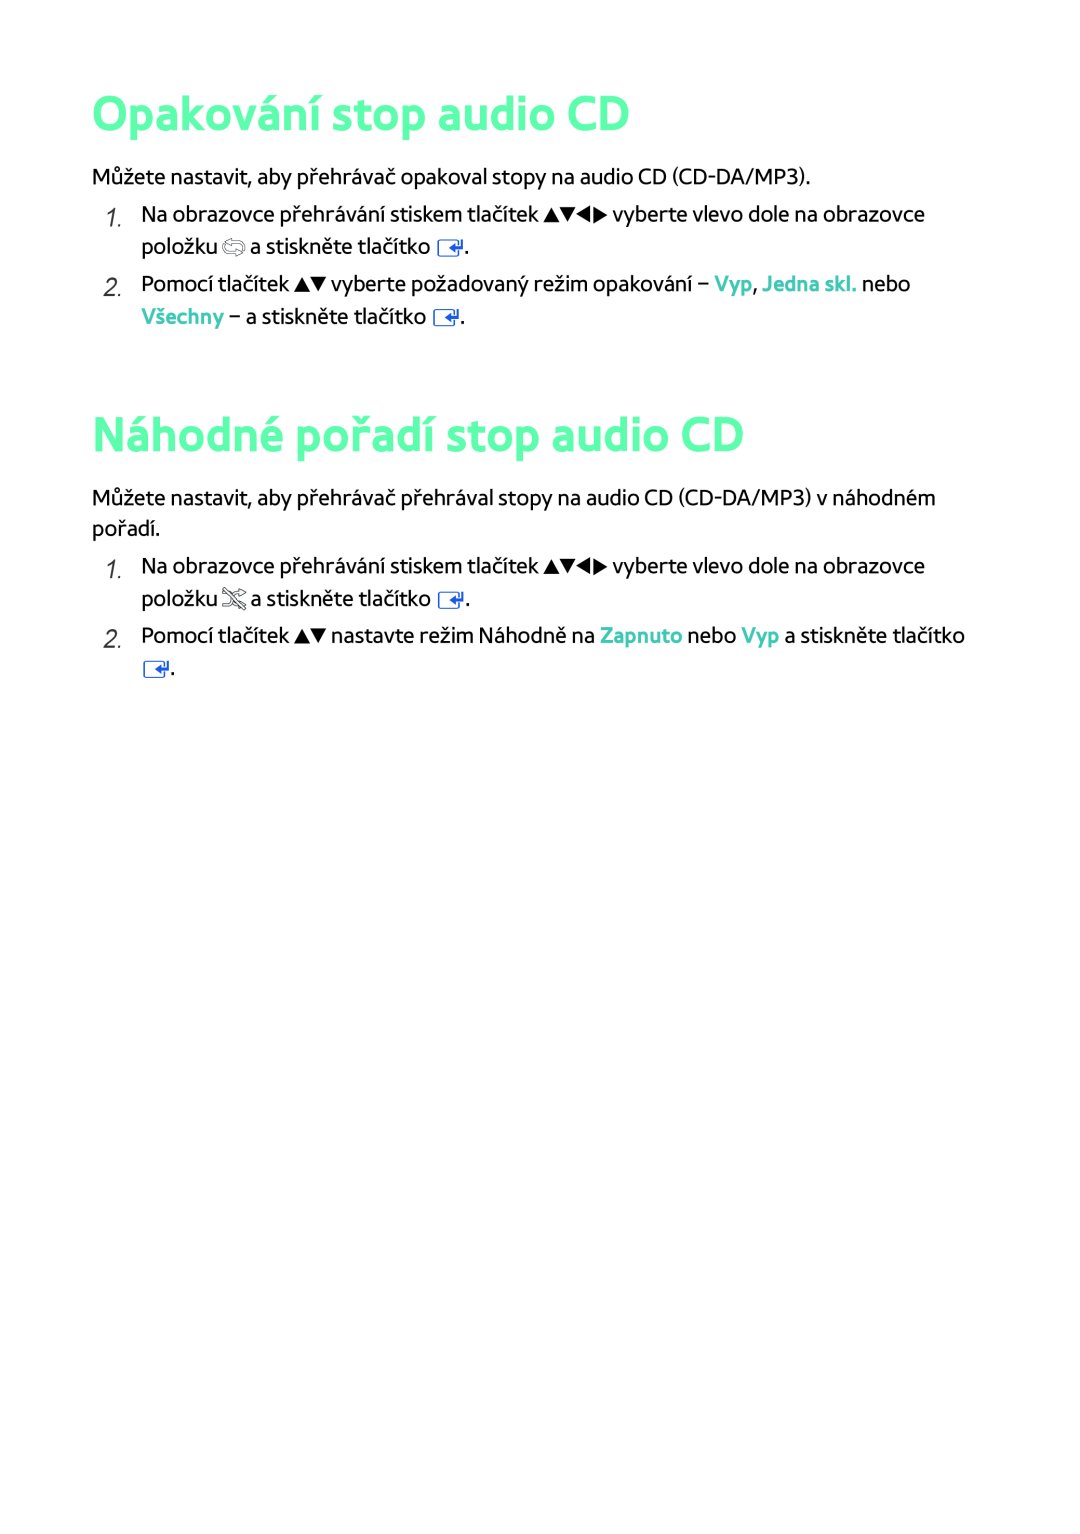 Samsung BD-F6900/EN, BD-F8900/EN, BD-F8500/EN manual Opakování stop audio CD, Náhodné pořadí stop audio CD 